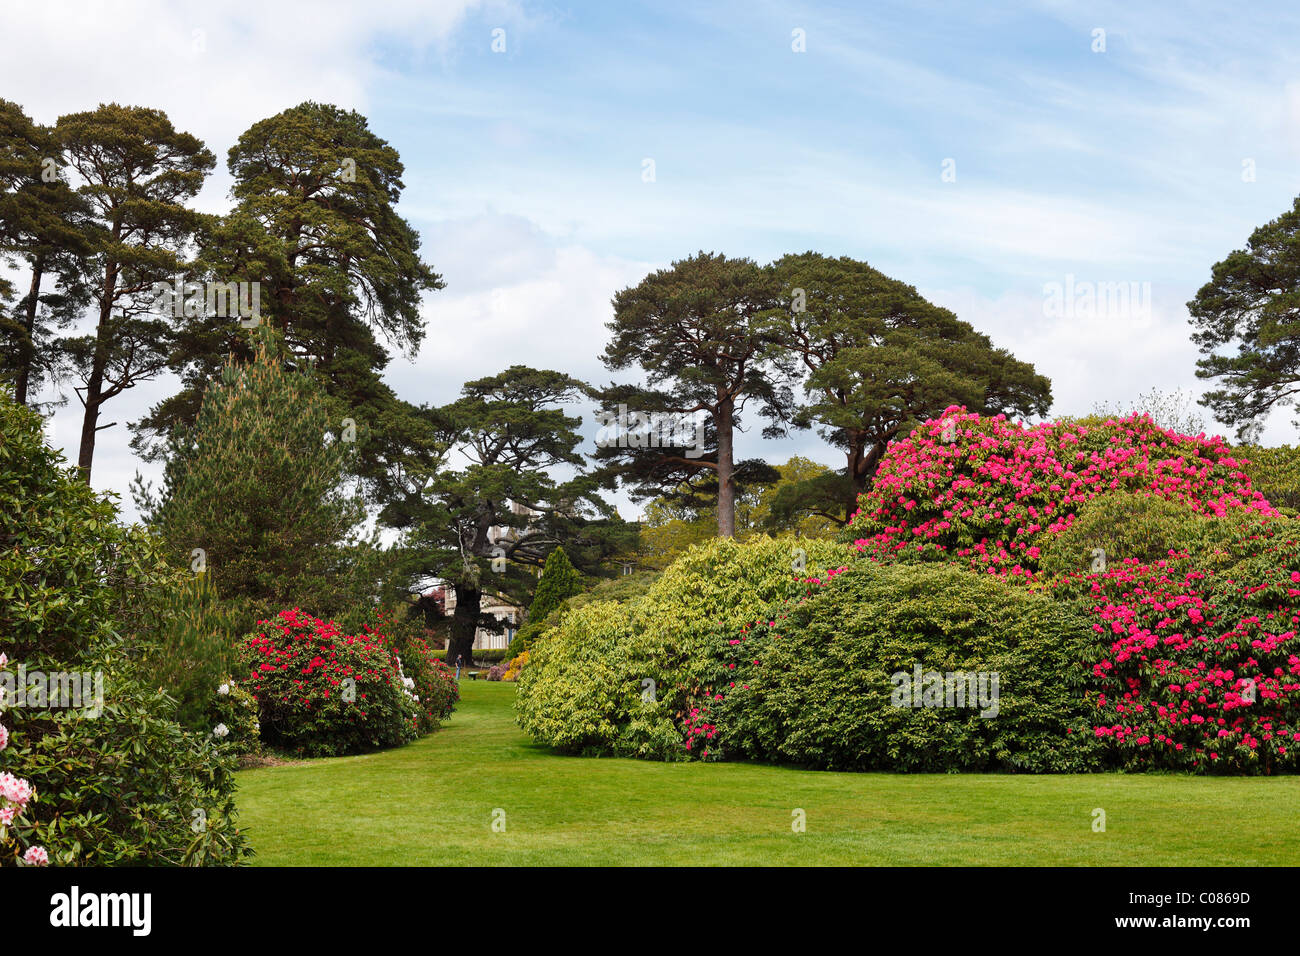 La Muckross Gardens en primavera, florecen azaleas arbustos, Parque Nacional de Killarney, condado de Kerry, Irlanda, Islas Británicas Foto de stock